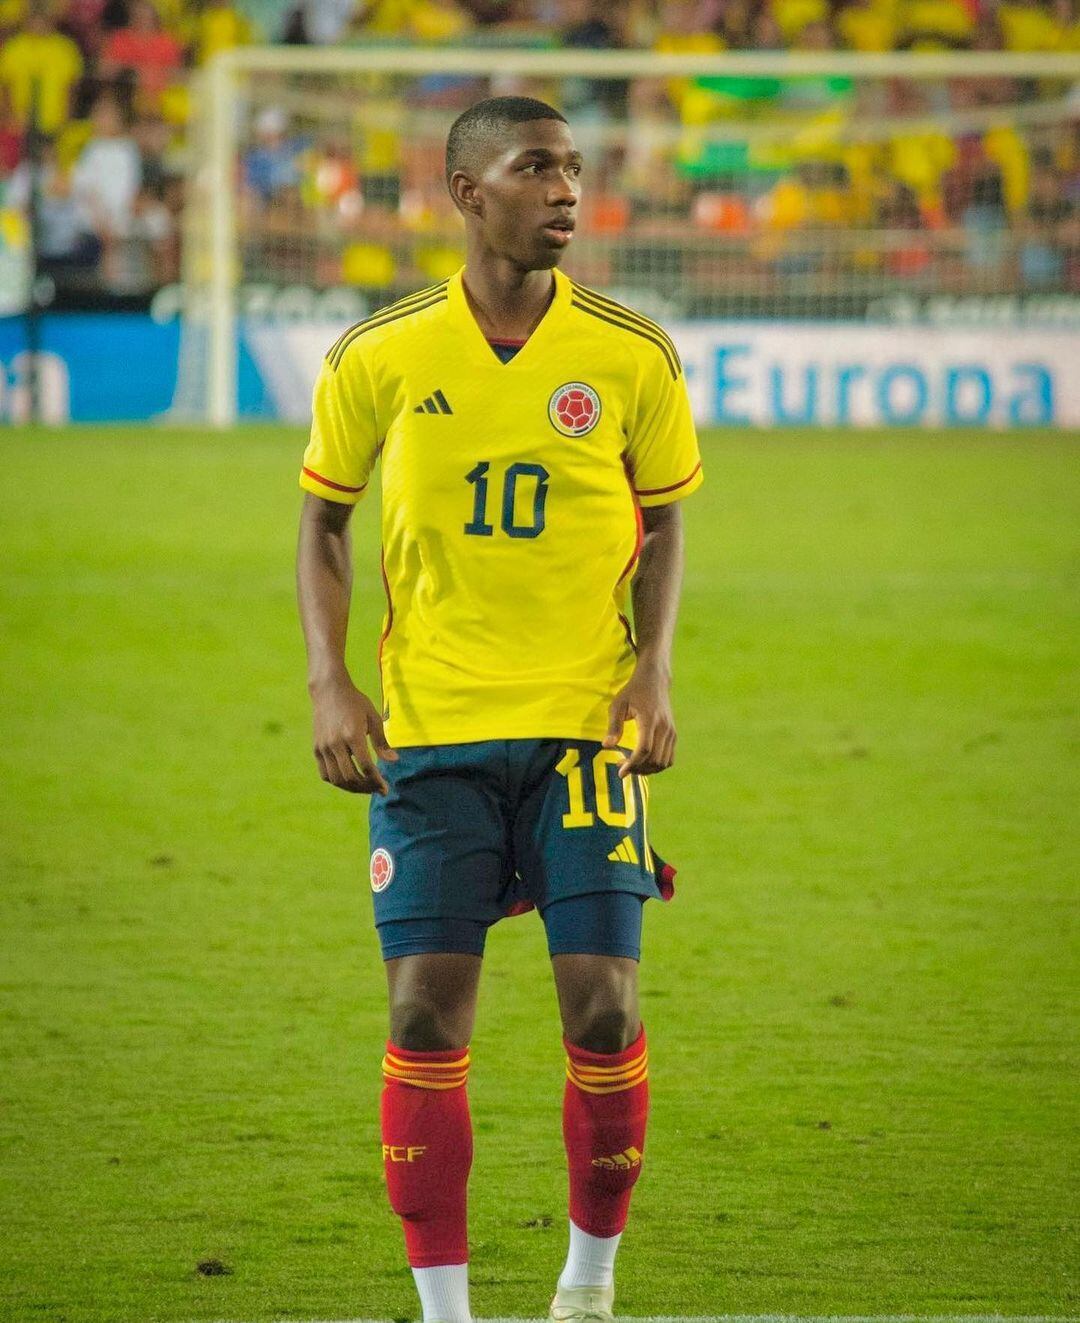 Yáser Asprilla es uno de los futbolistas colombianos con mejor proyección a futuro.